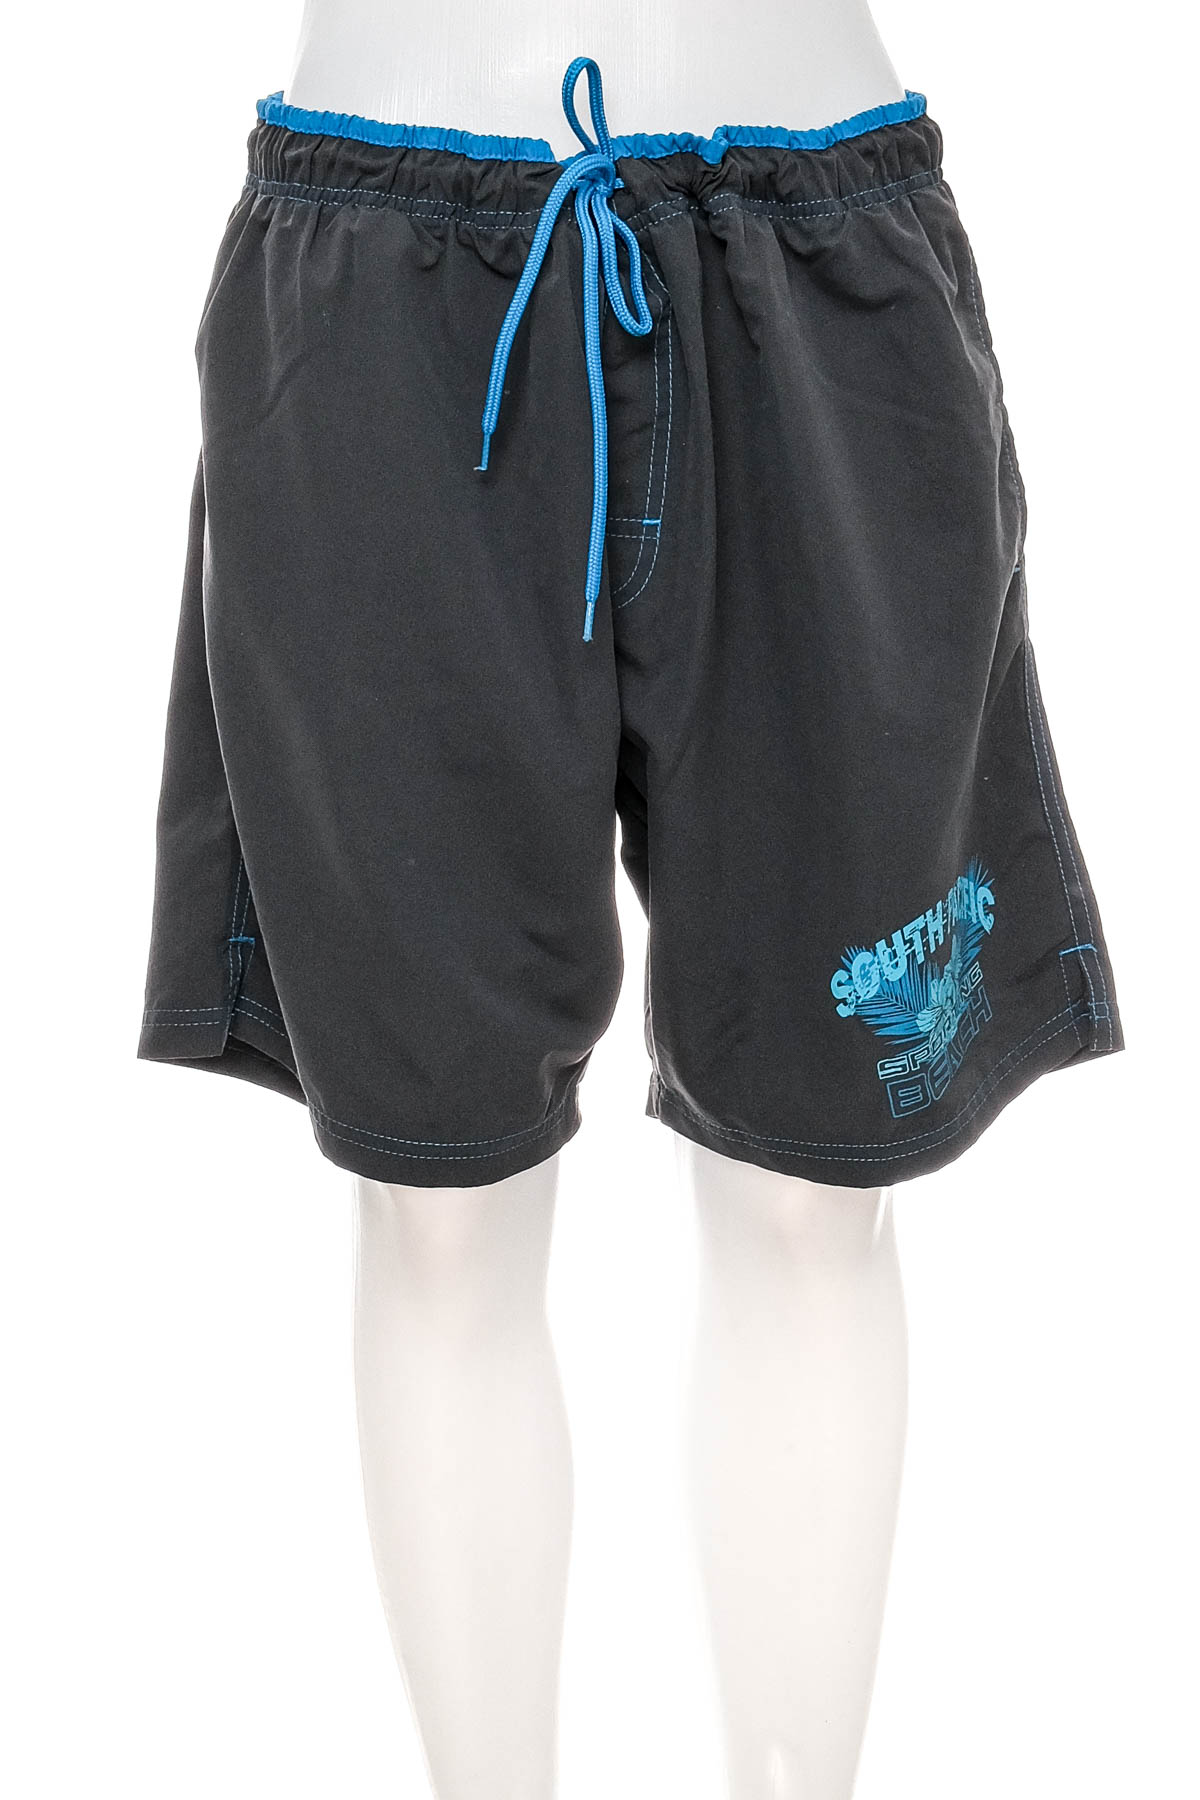 Men's shorts - ATLAS for MEN - 0